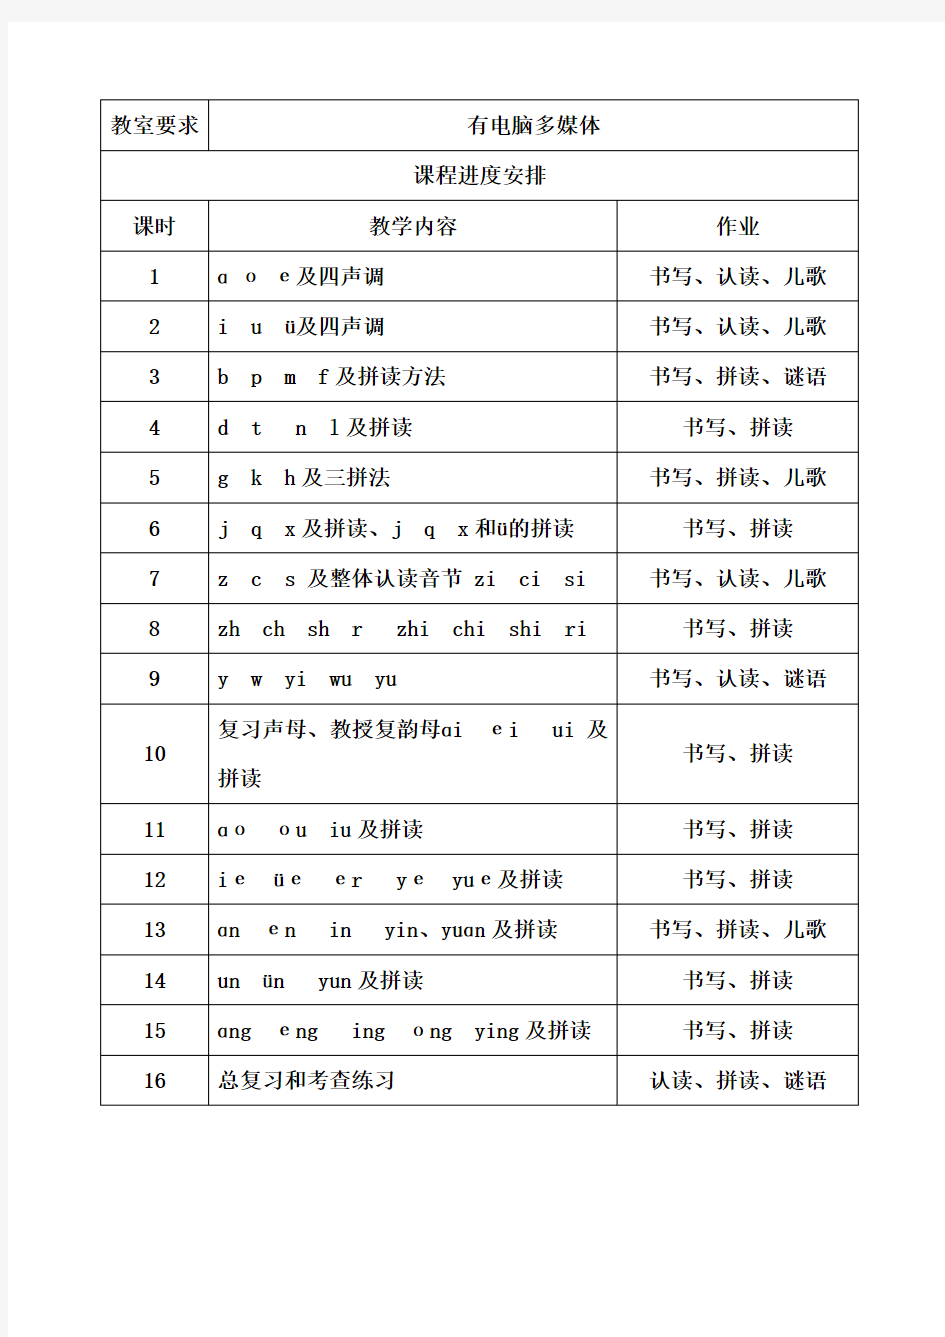 汉语拼音班课程计划表